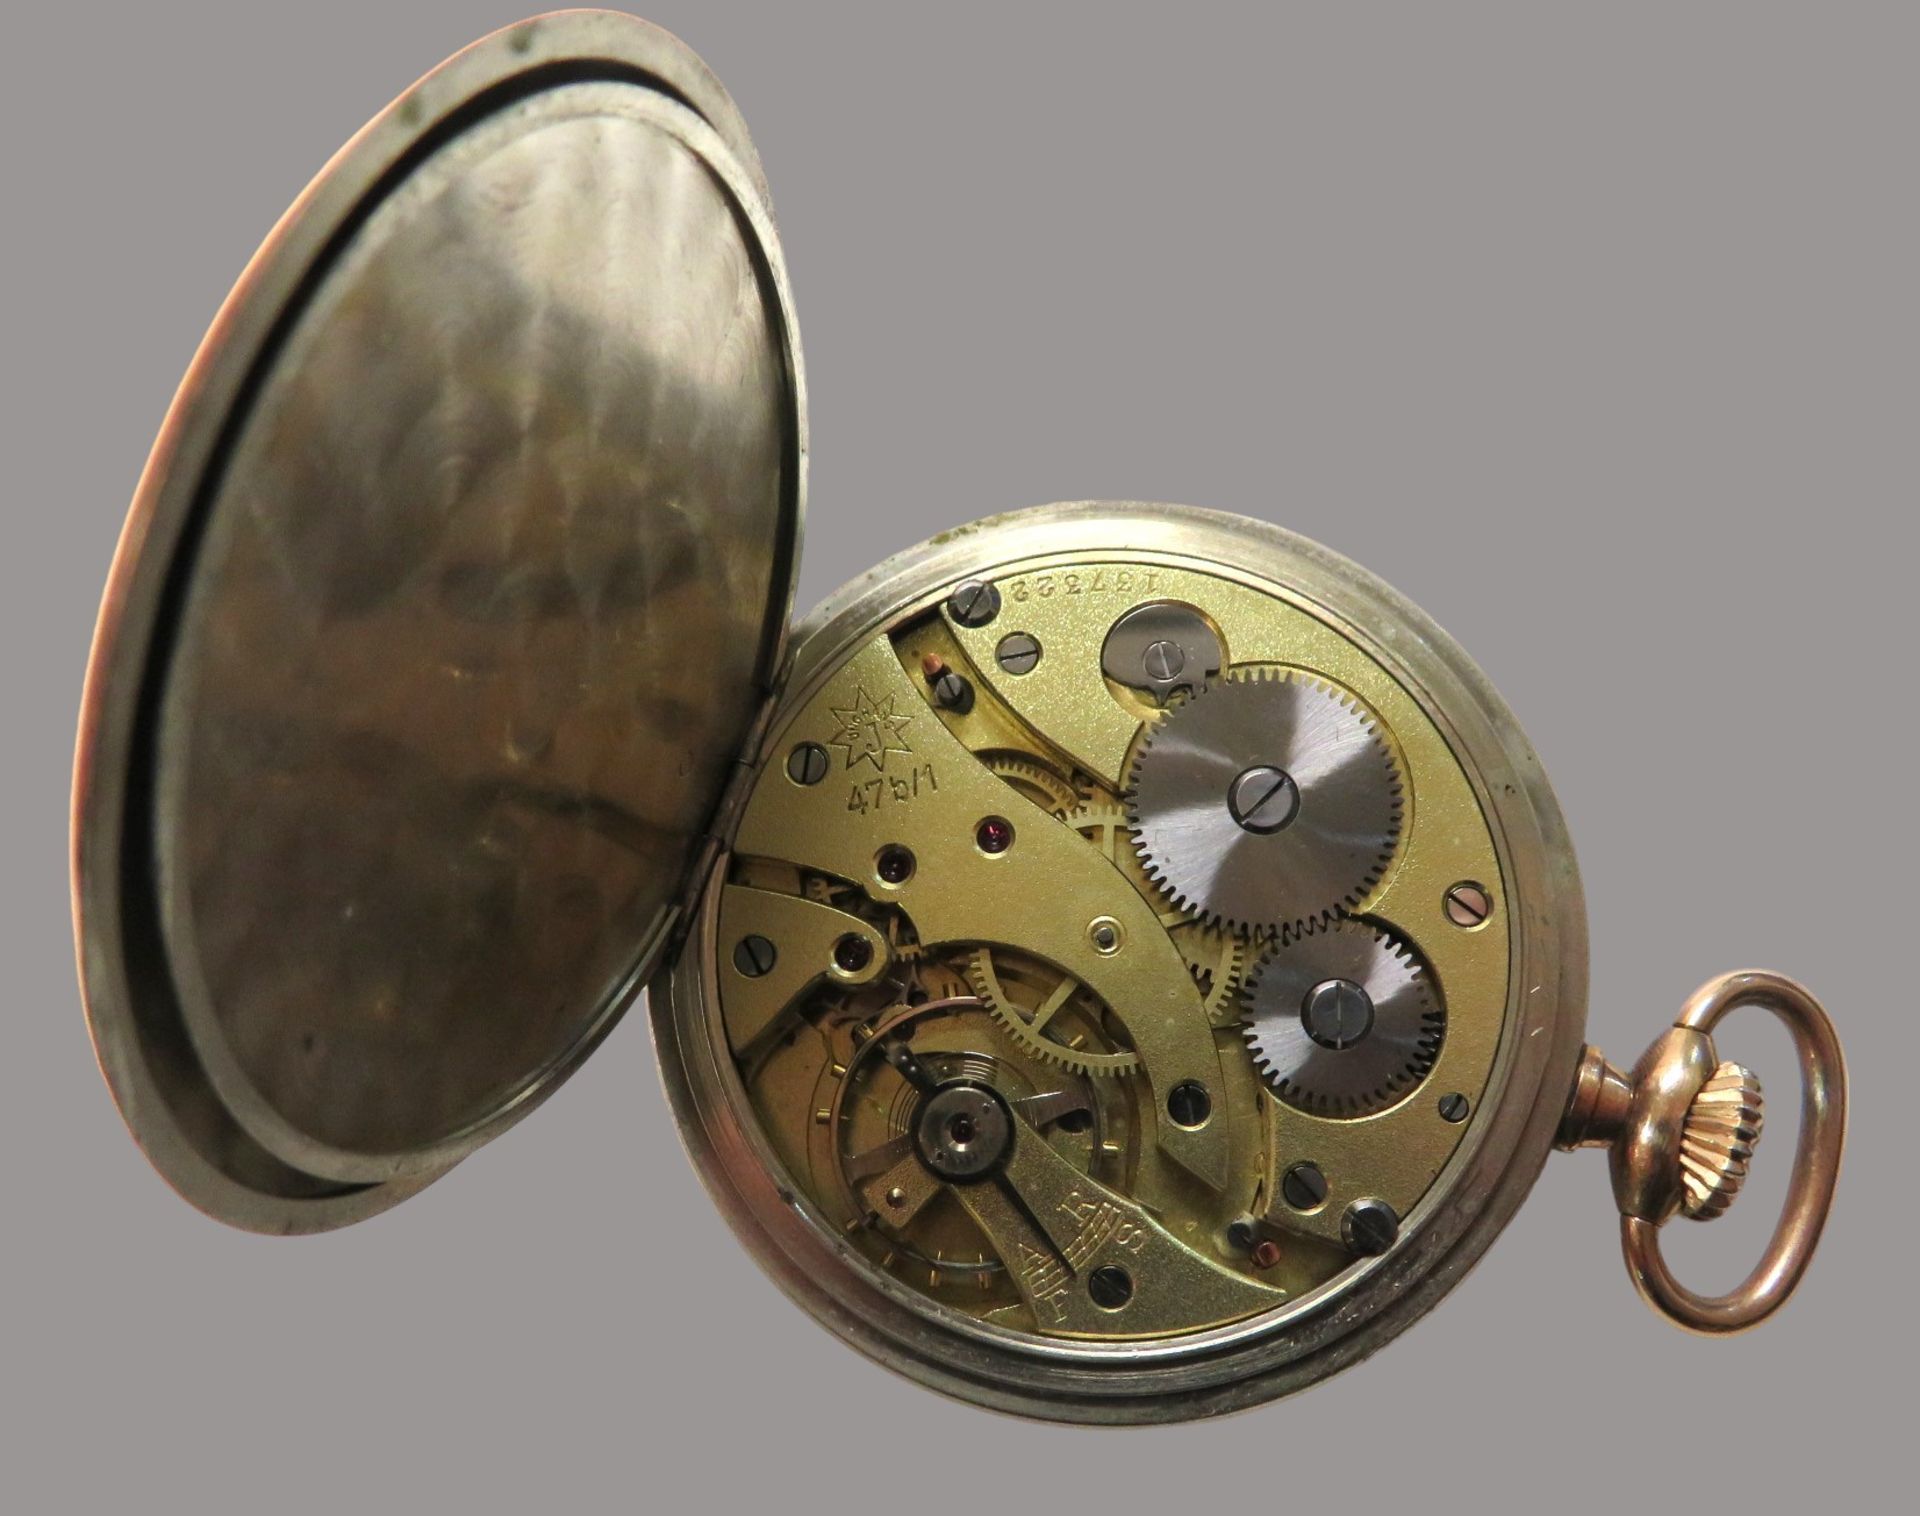 Taschenuhr, Junghans, um 1900, Gehäuse Stahl mit Teilvergoldung, Kronenaufzug, Gangfähigkeit nicht - Image 3 of 3